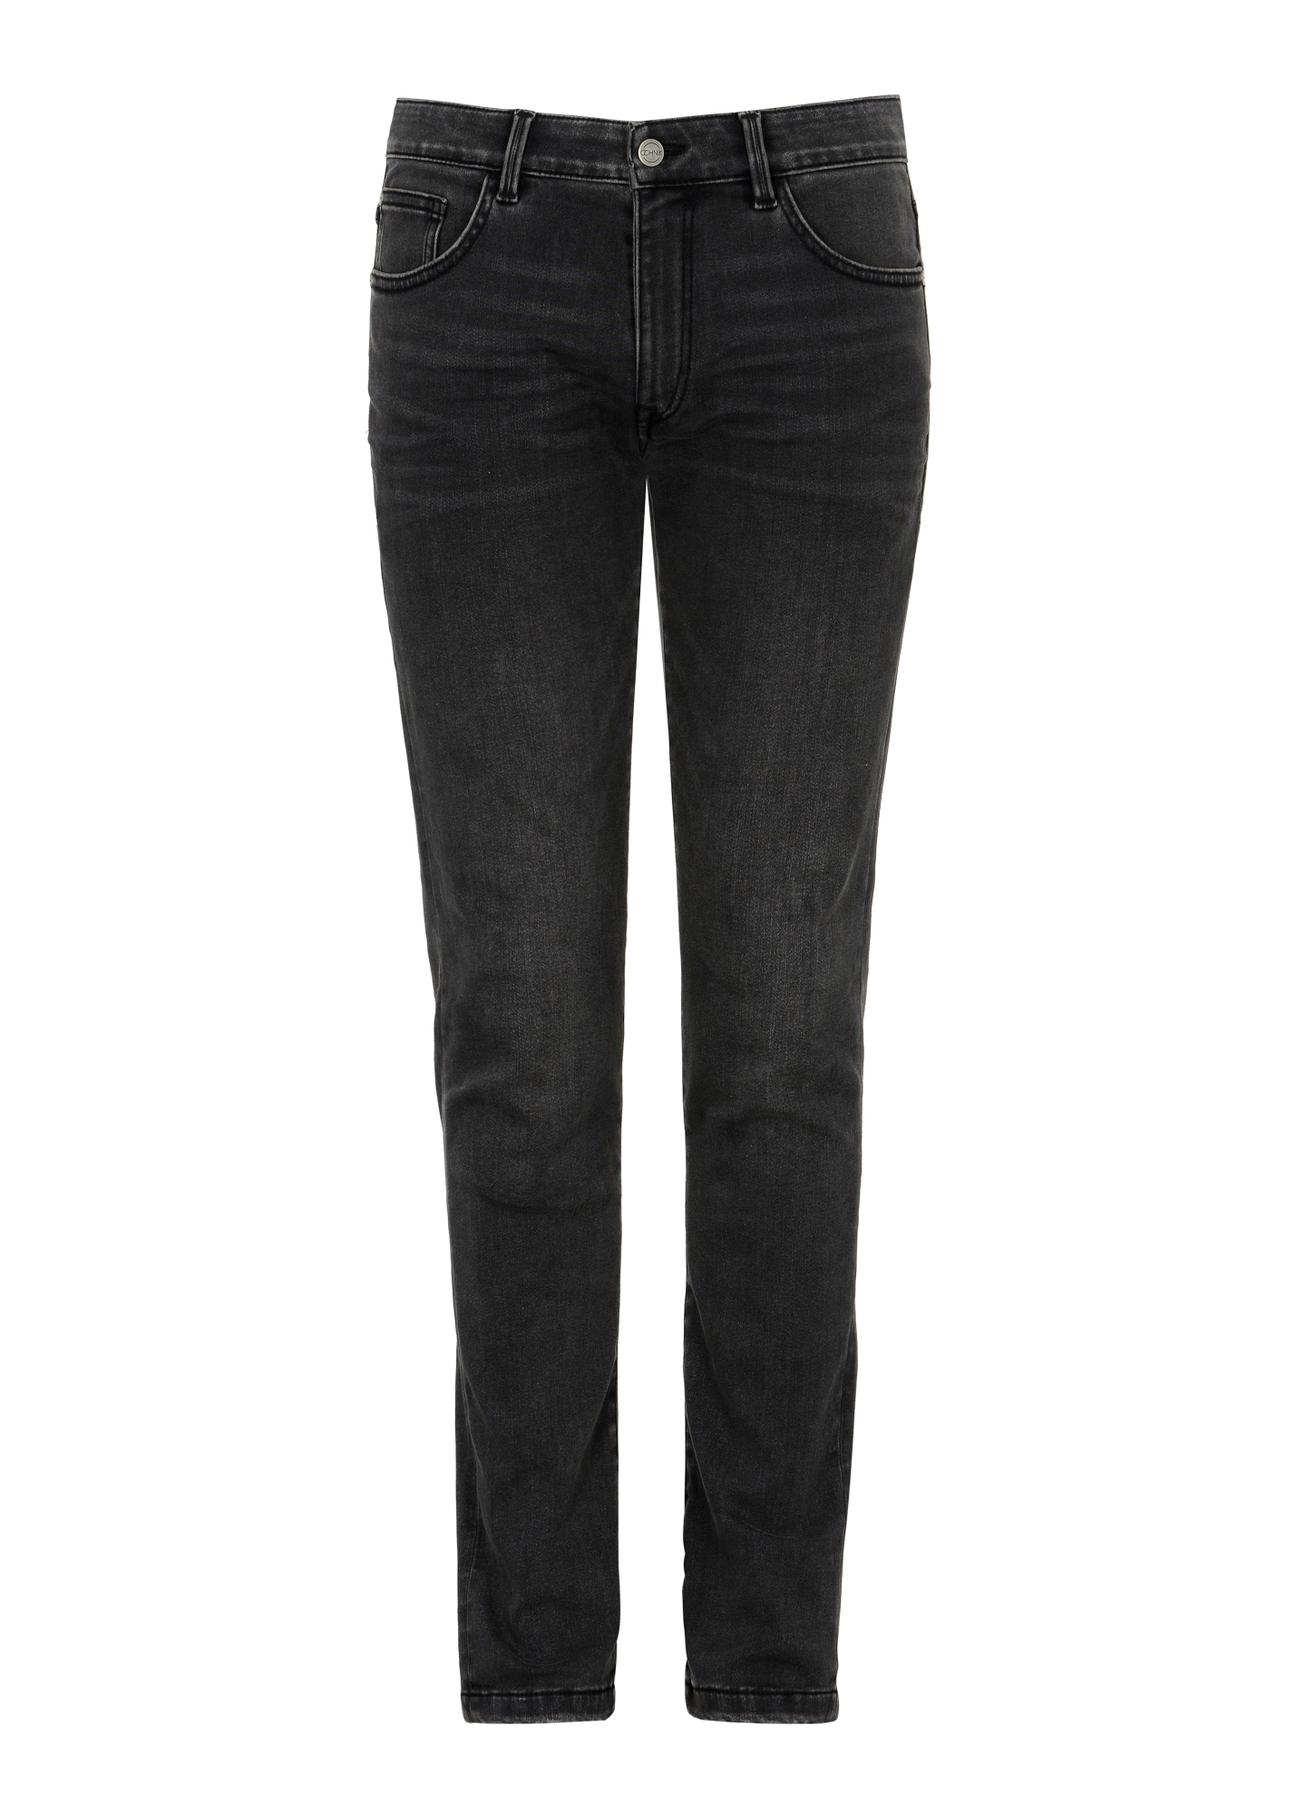 Czarne spodnie jeansowe męskie JEAMT-0020-99(Z23)